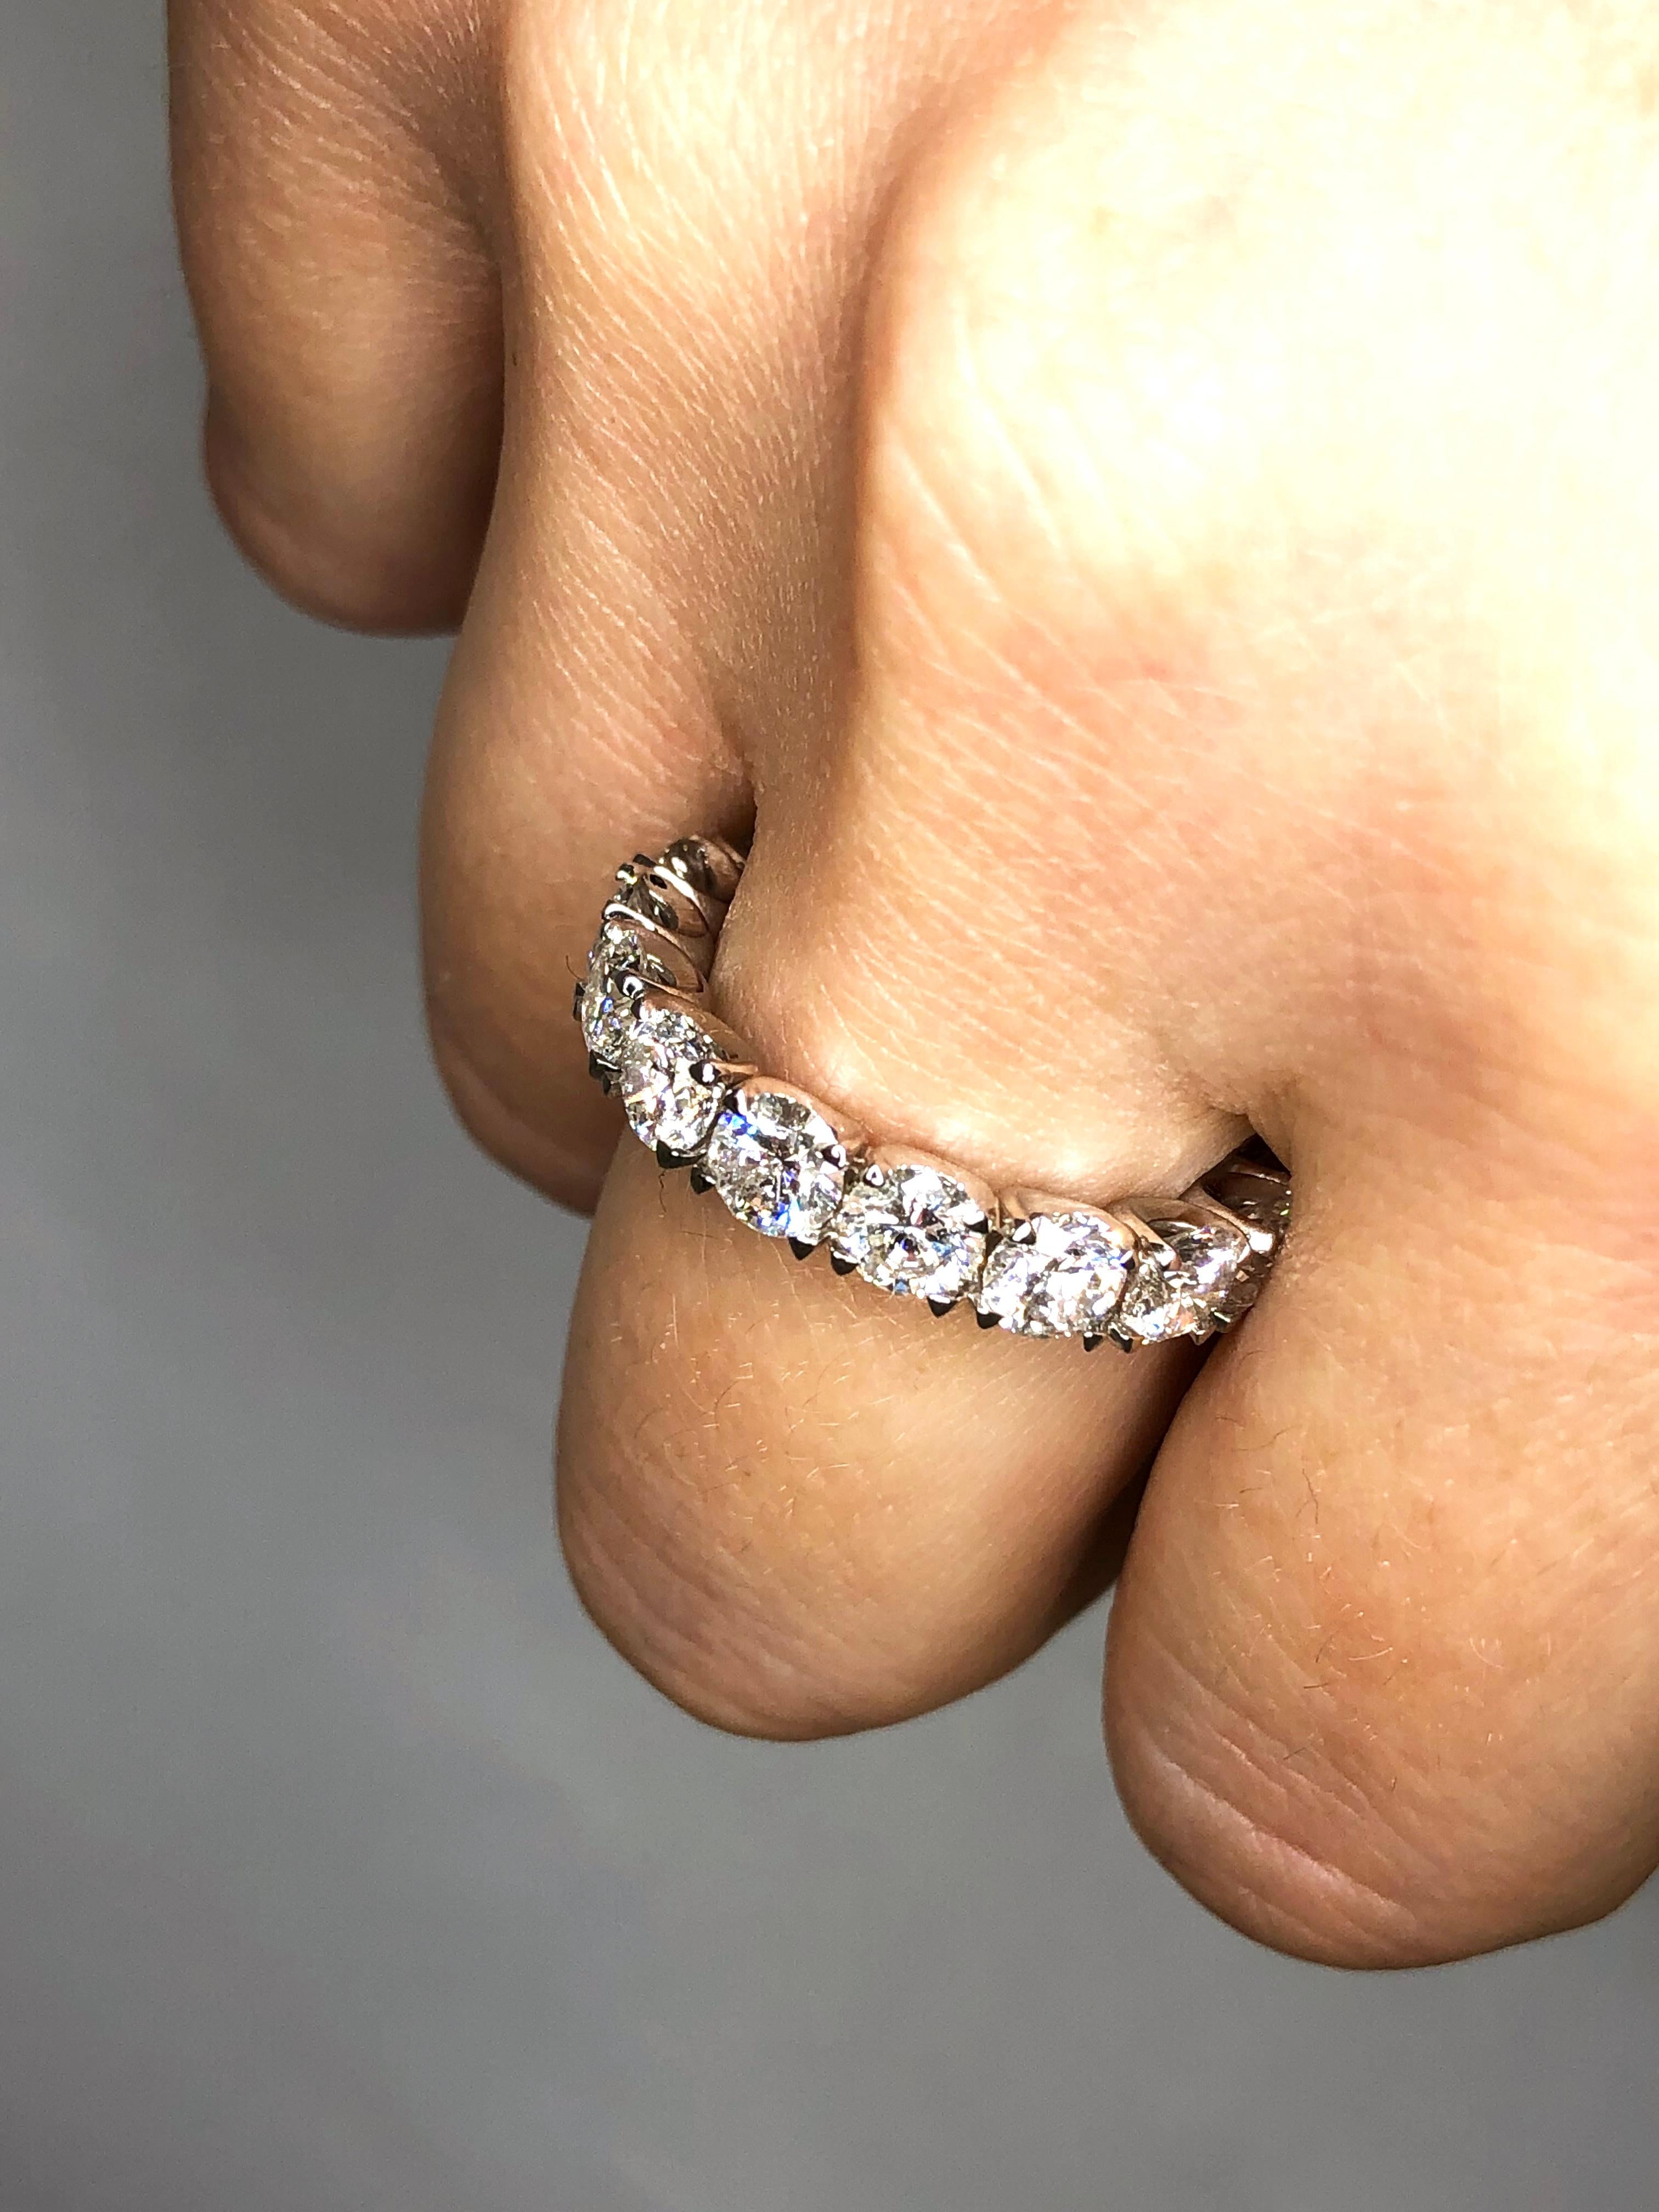 Diamant Eternity Band in Platin gefasst. Alle natürlichen Diamanten mit rundem Brillant: F-G VS2-SI1 . Karatgewicht: 4,45ct. Gesamtgewicht des Rings: 7,1 Gramm. Ringgröße: 5,5. Kann auf Anfrage in der Größe angepasst werden. Dieser Ring ist